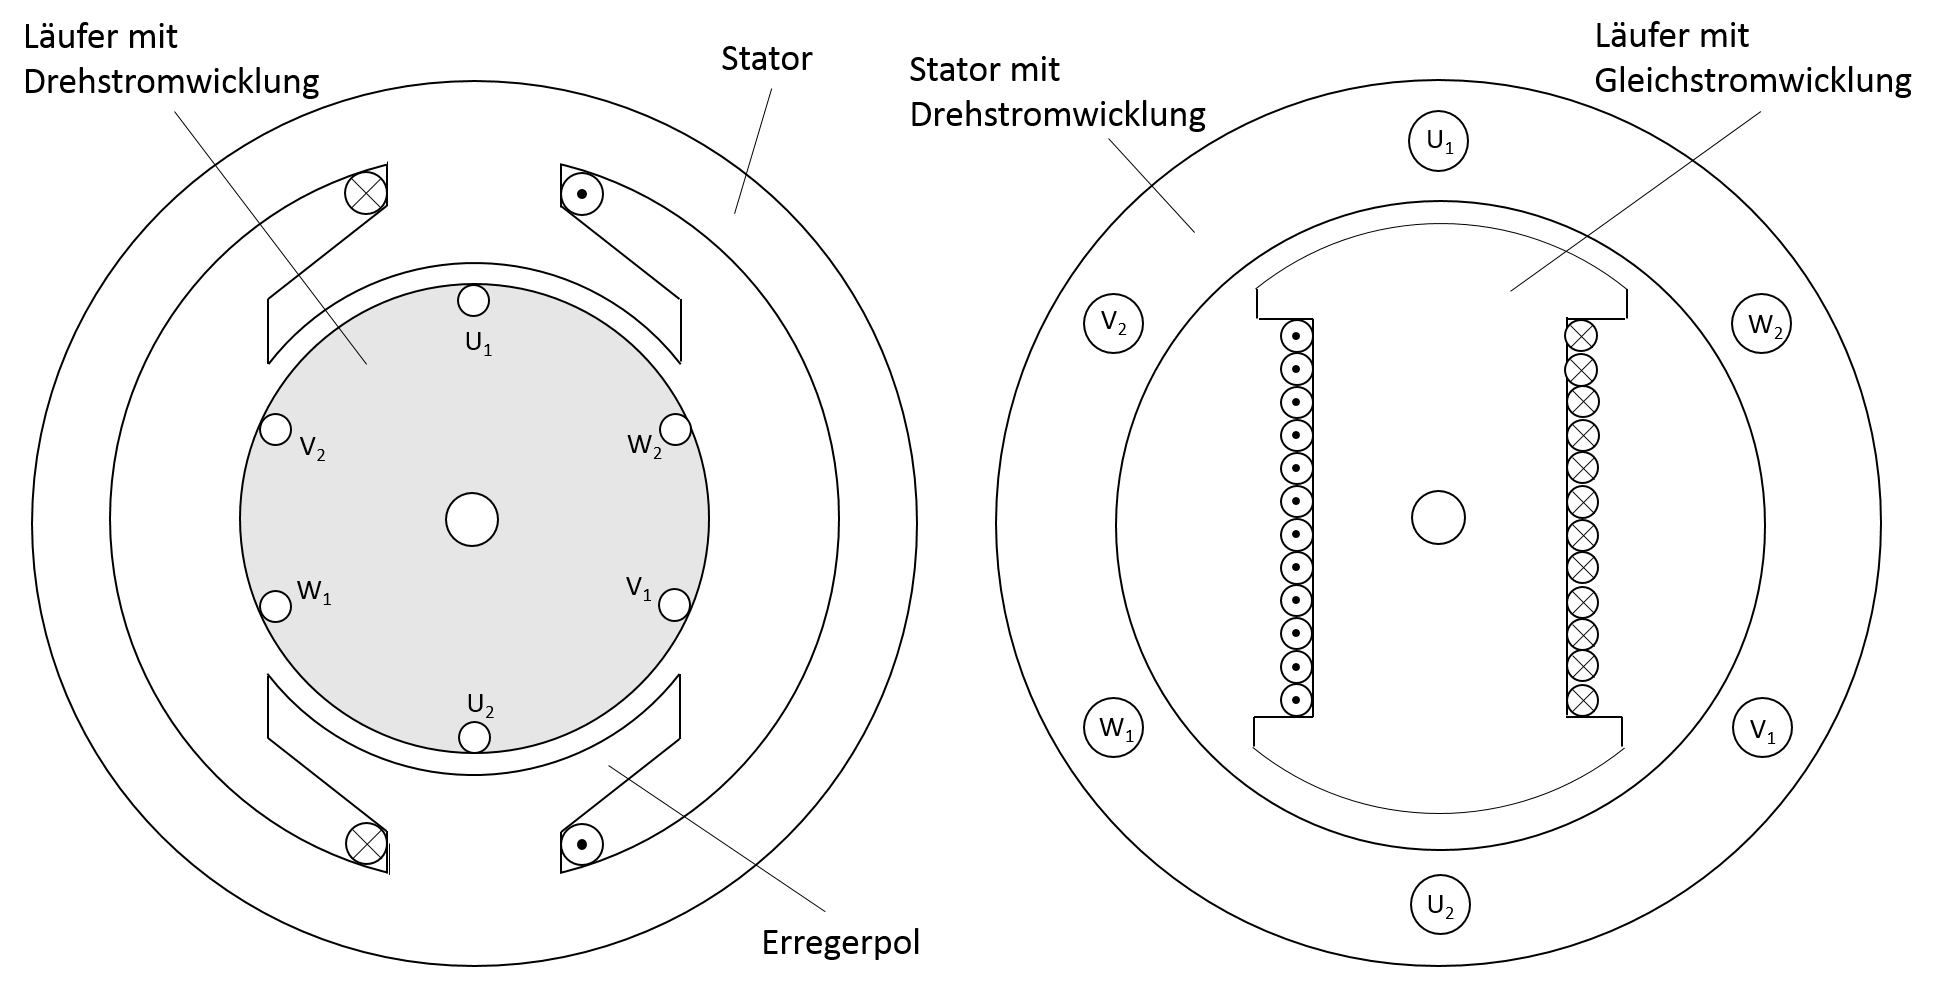 Synchronmaschine als Aussenpolmaschine (links) und Innenpolmaschine (rechts)